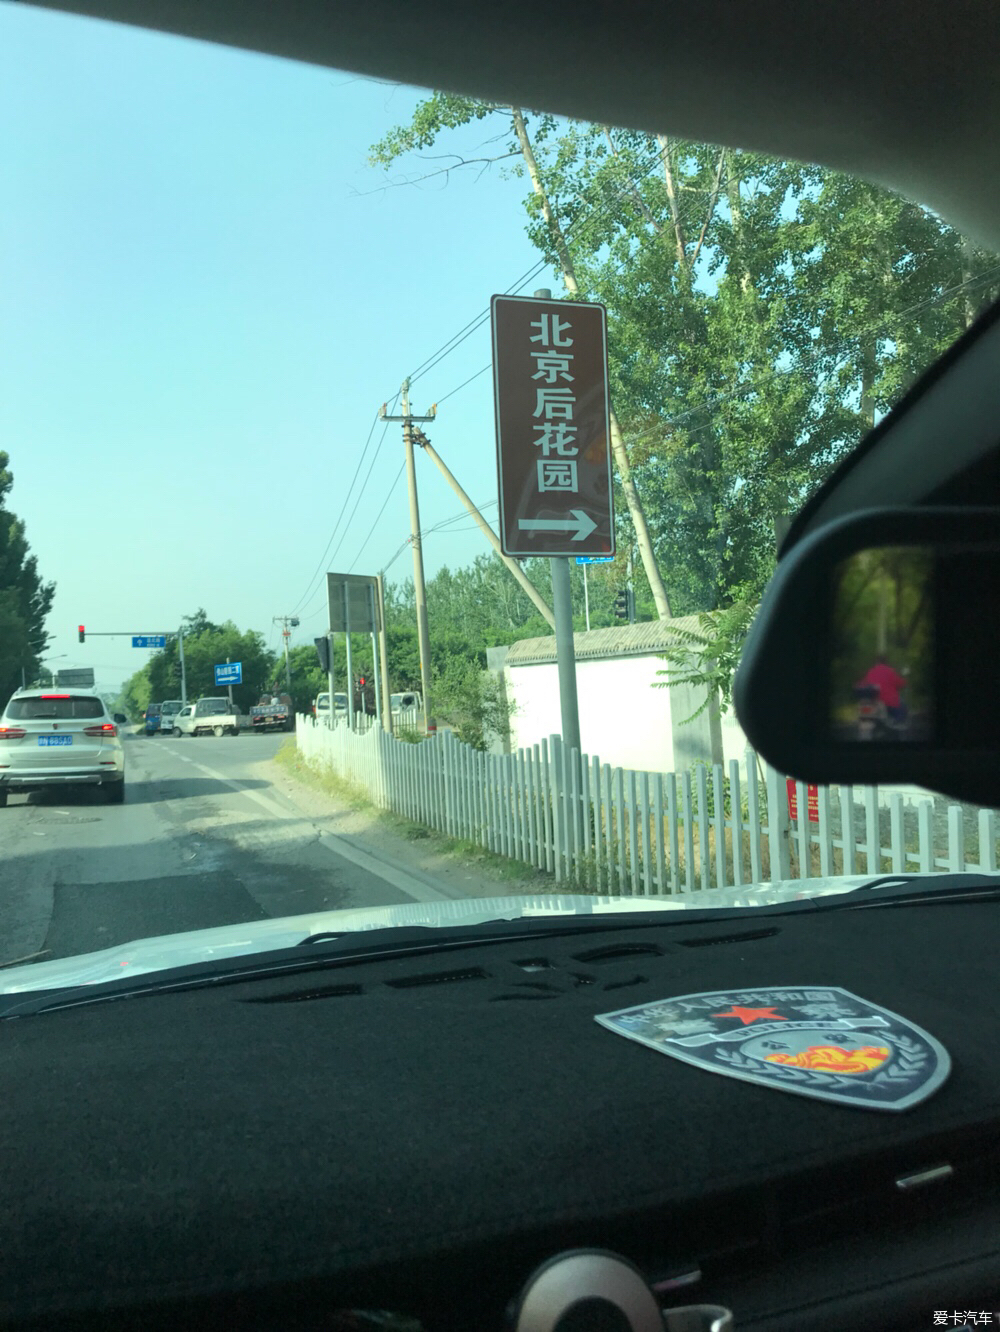 2018 5.26 北京XT5车友会自驾游活动完美收官